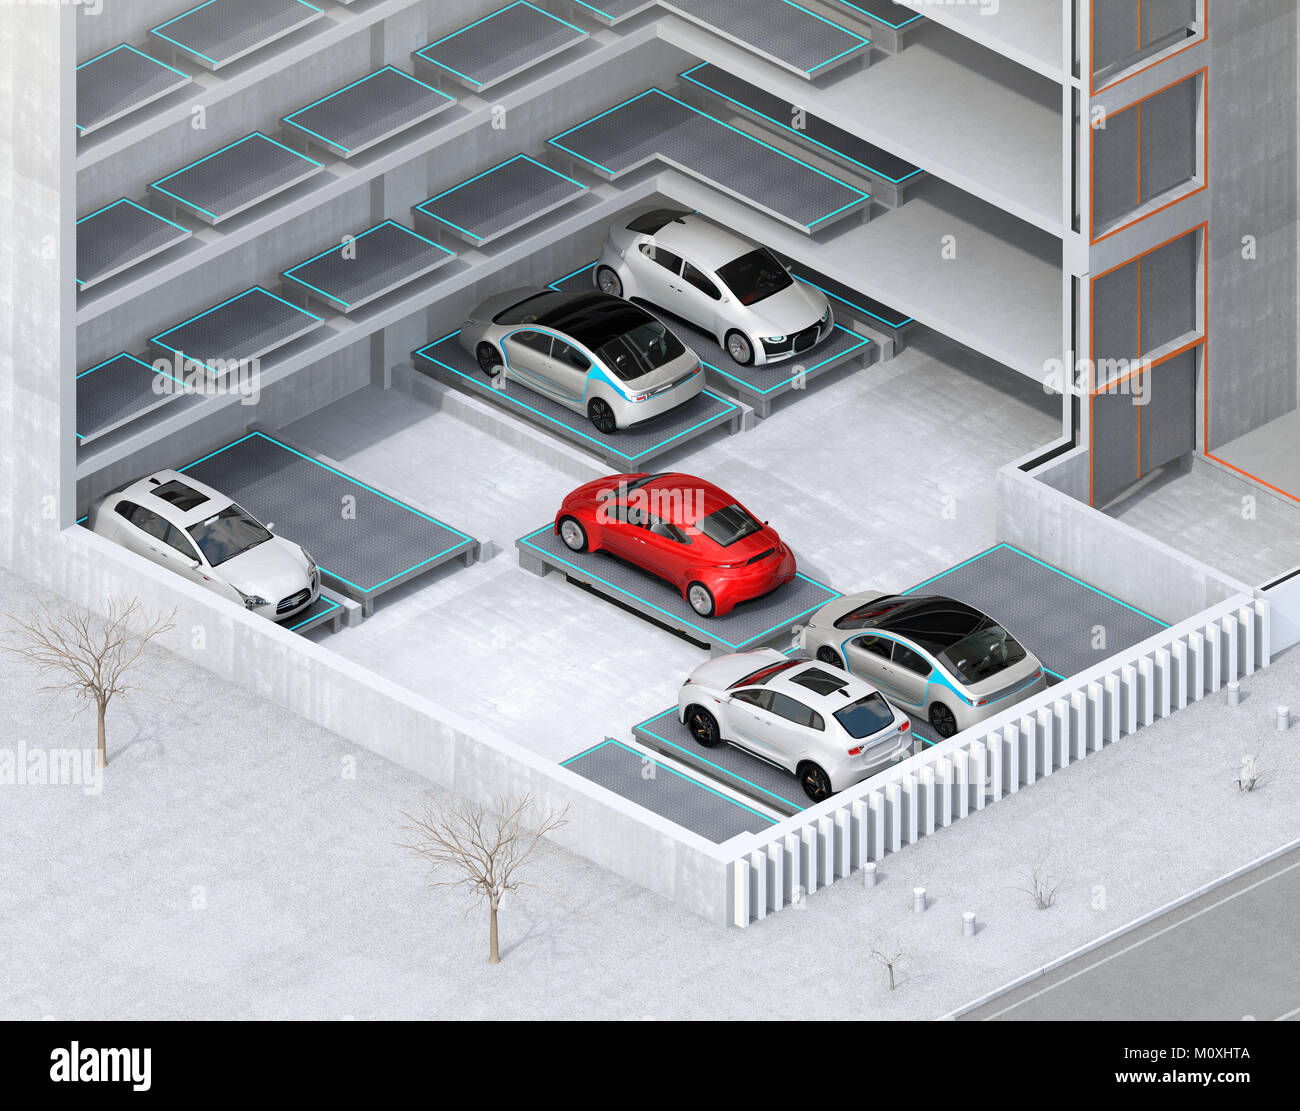 Imagen seccionada isométrica para el sistema de aparcamiento automático AGV (vehículo guiado automatizado). Representación 3D imagen. Foto de stock